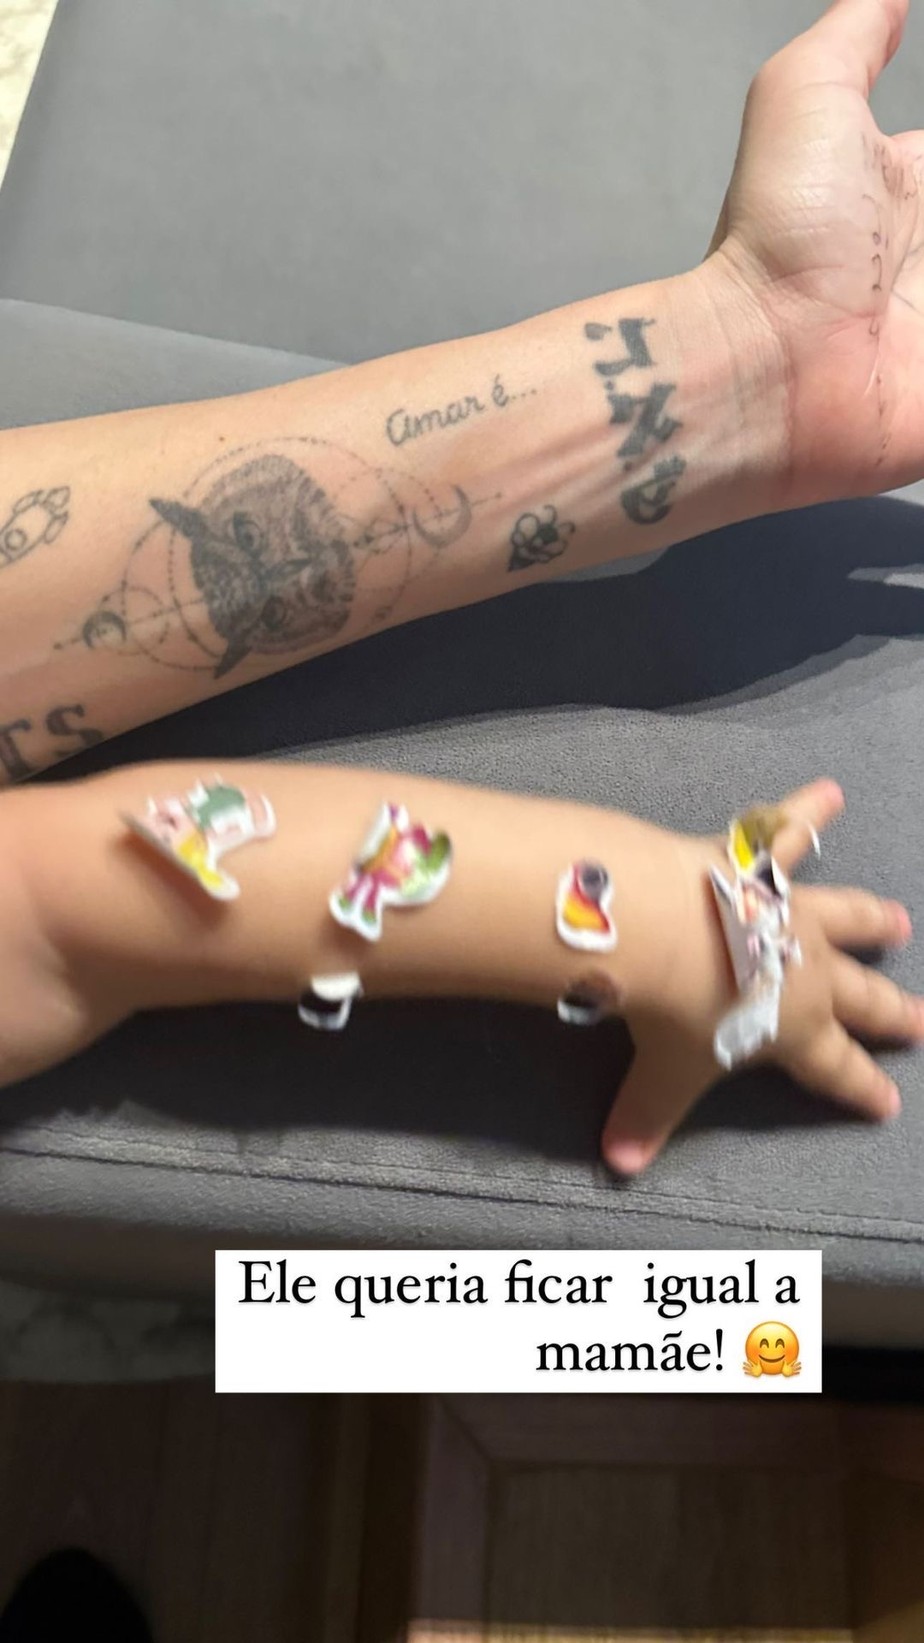 Francisco tatua bracinhos e encanta Thaila Ayala